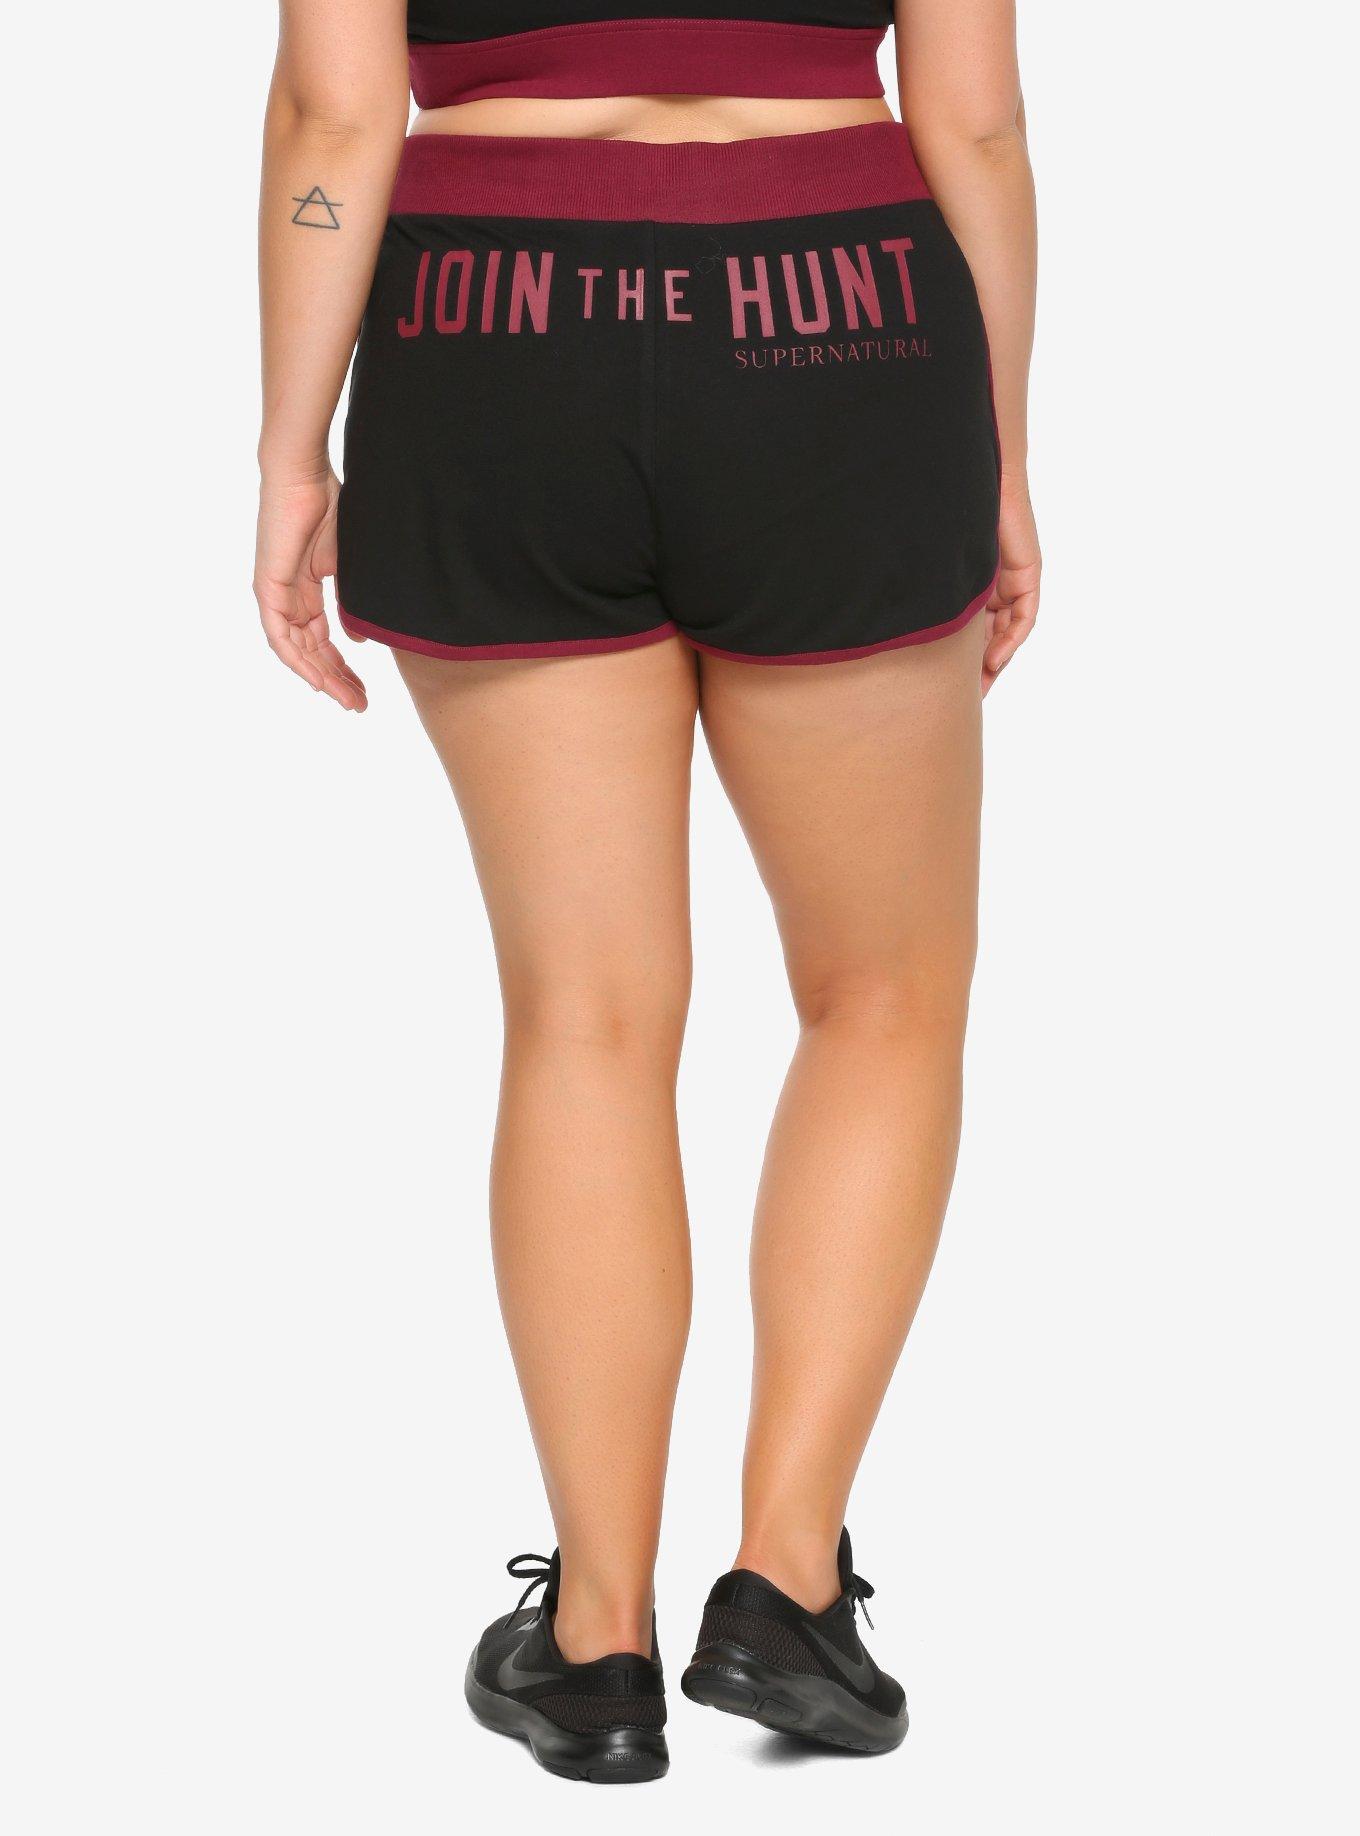 Supernatural Maroon & Black Join The Hunt Girls Soft Shorts Plus Size, BLACK, hi-res